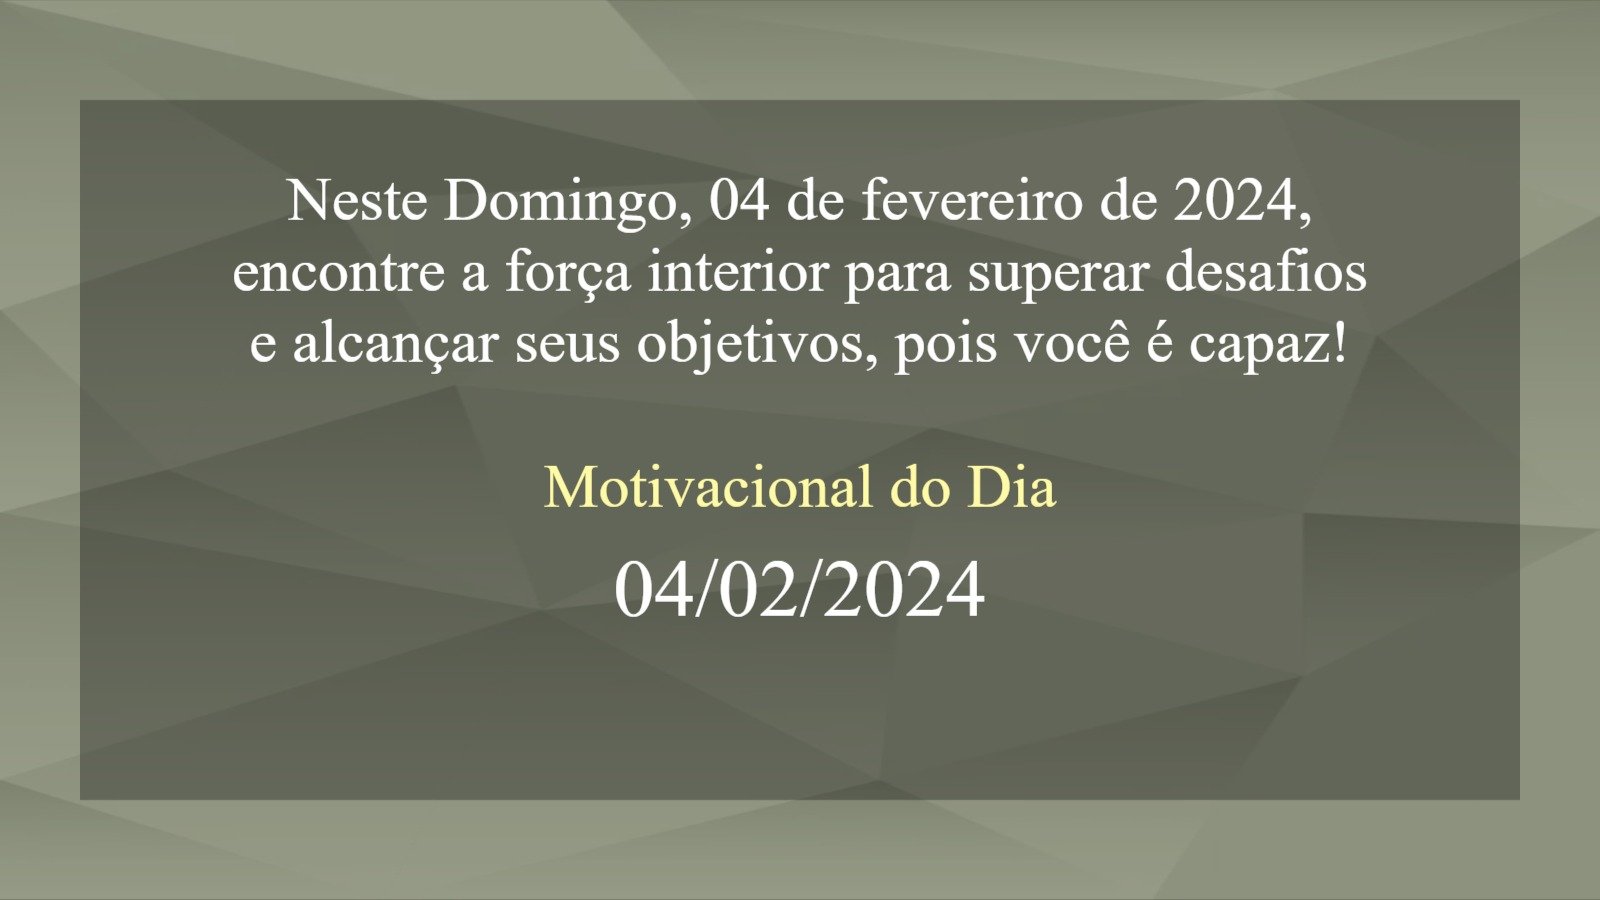 Motivacional do Dia 04 de fevereiro de 2024 - (domingo, 04/02/2024) - hoje